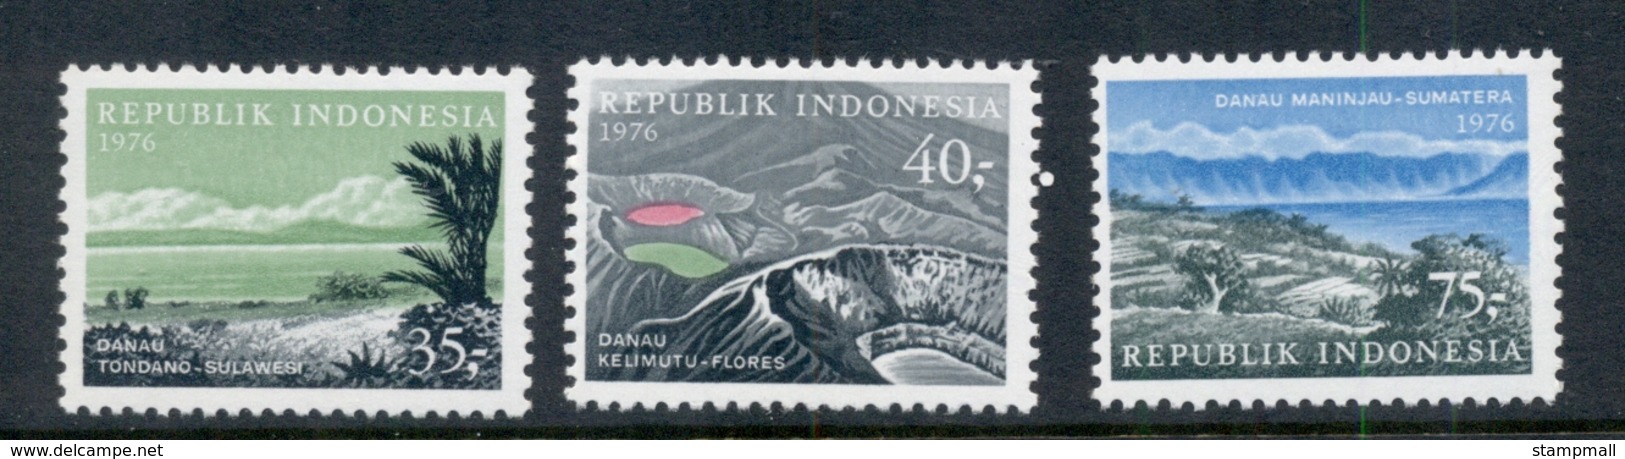 Indonesia 1976 Tourist Publicity MUH - Indonesia